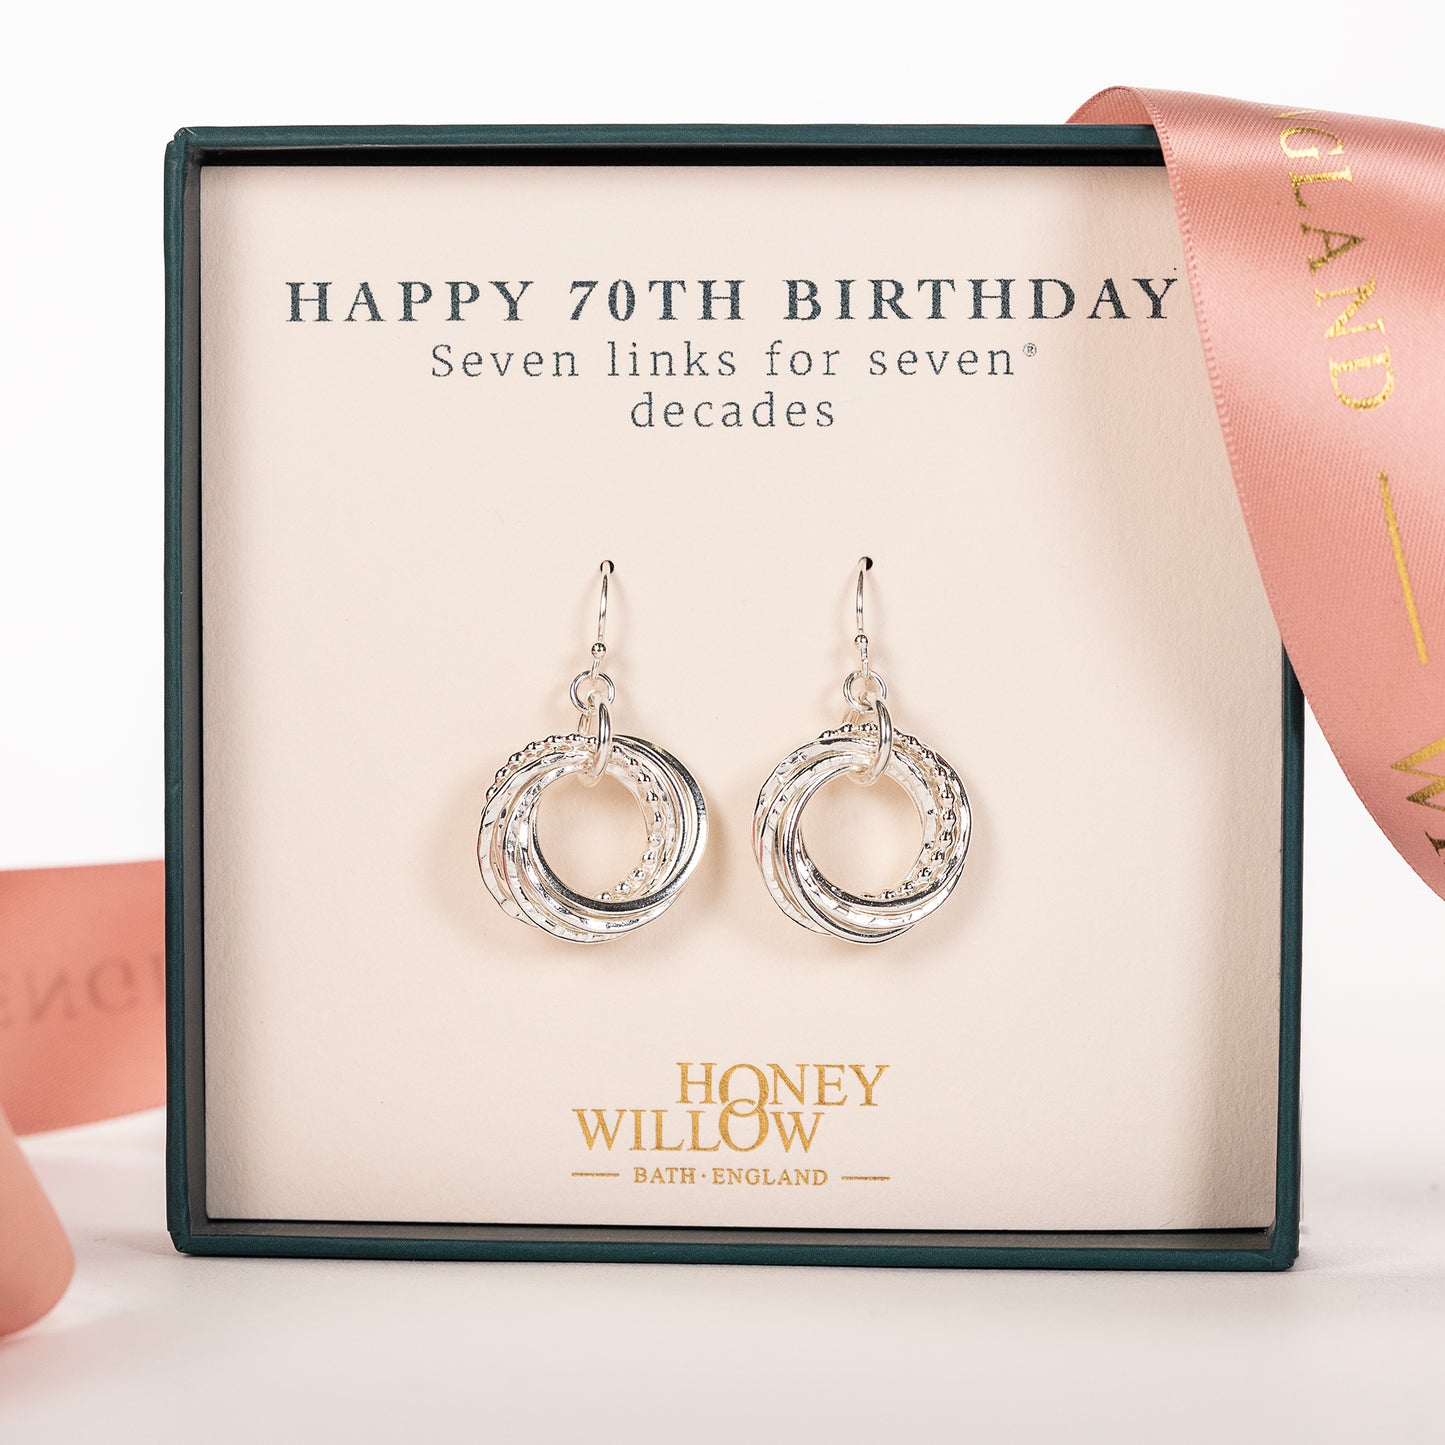 70th birthday earrings